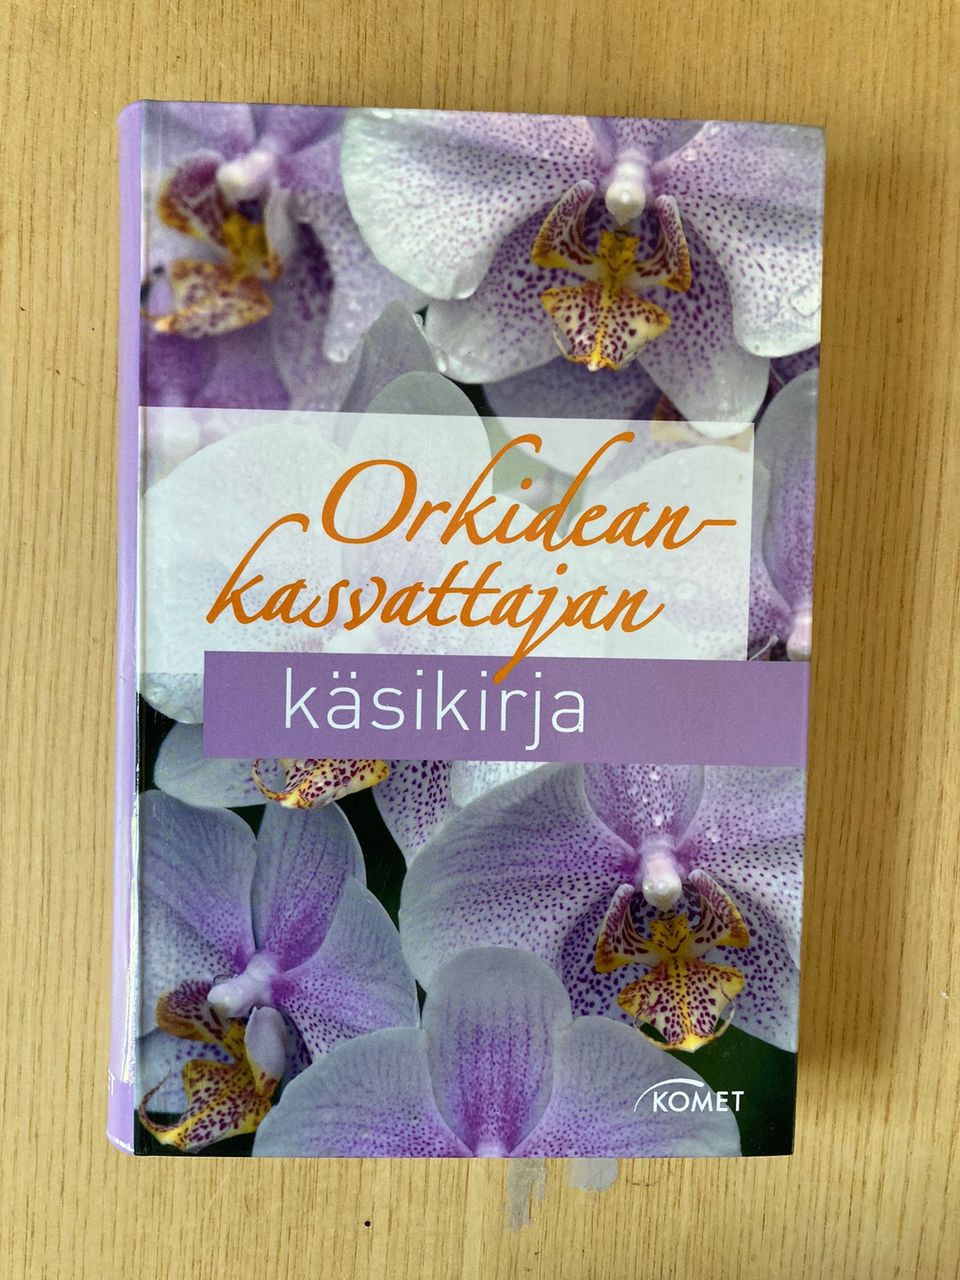 Orkideankasvattajan käsikirja